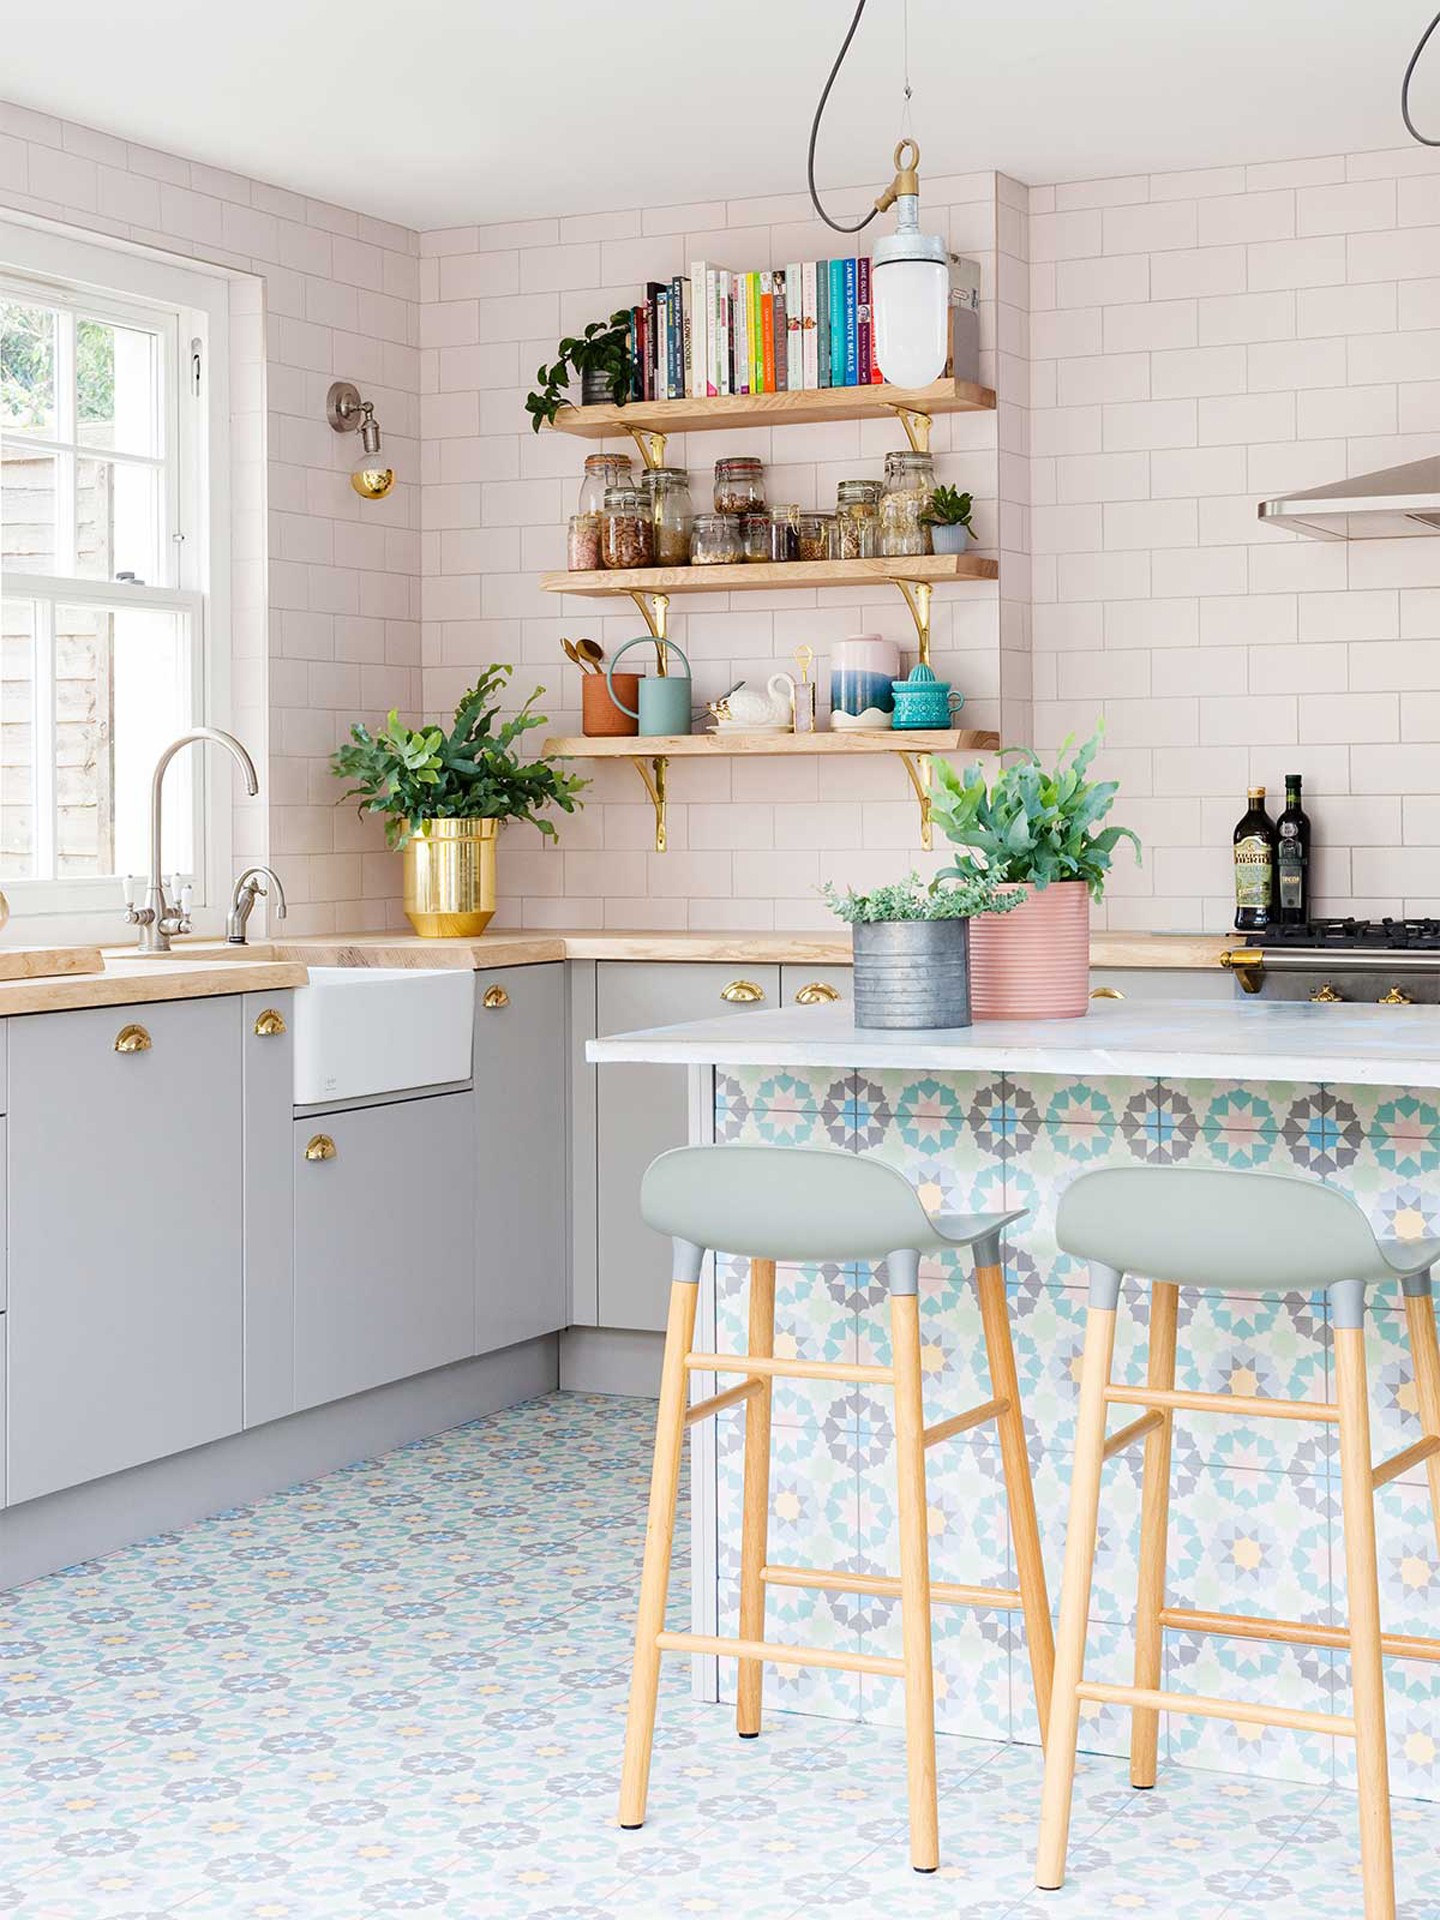 Décor do dia: revestimentos coloridos decoram cozinha aberta (Foto: Divulgação)